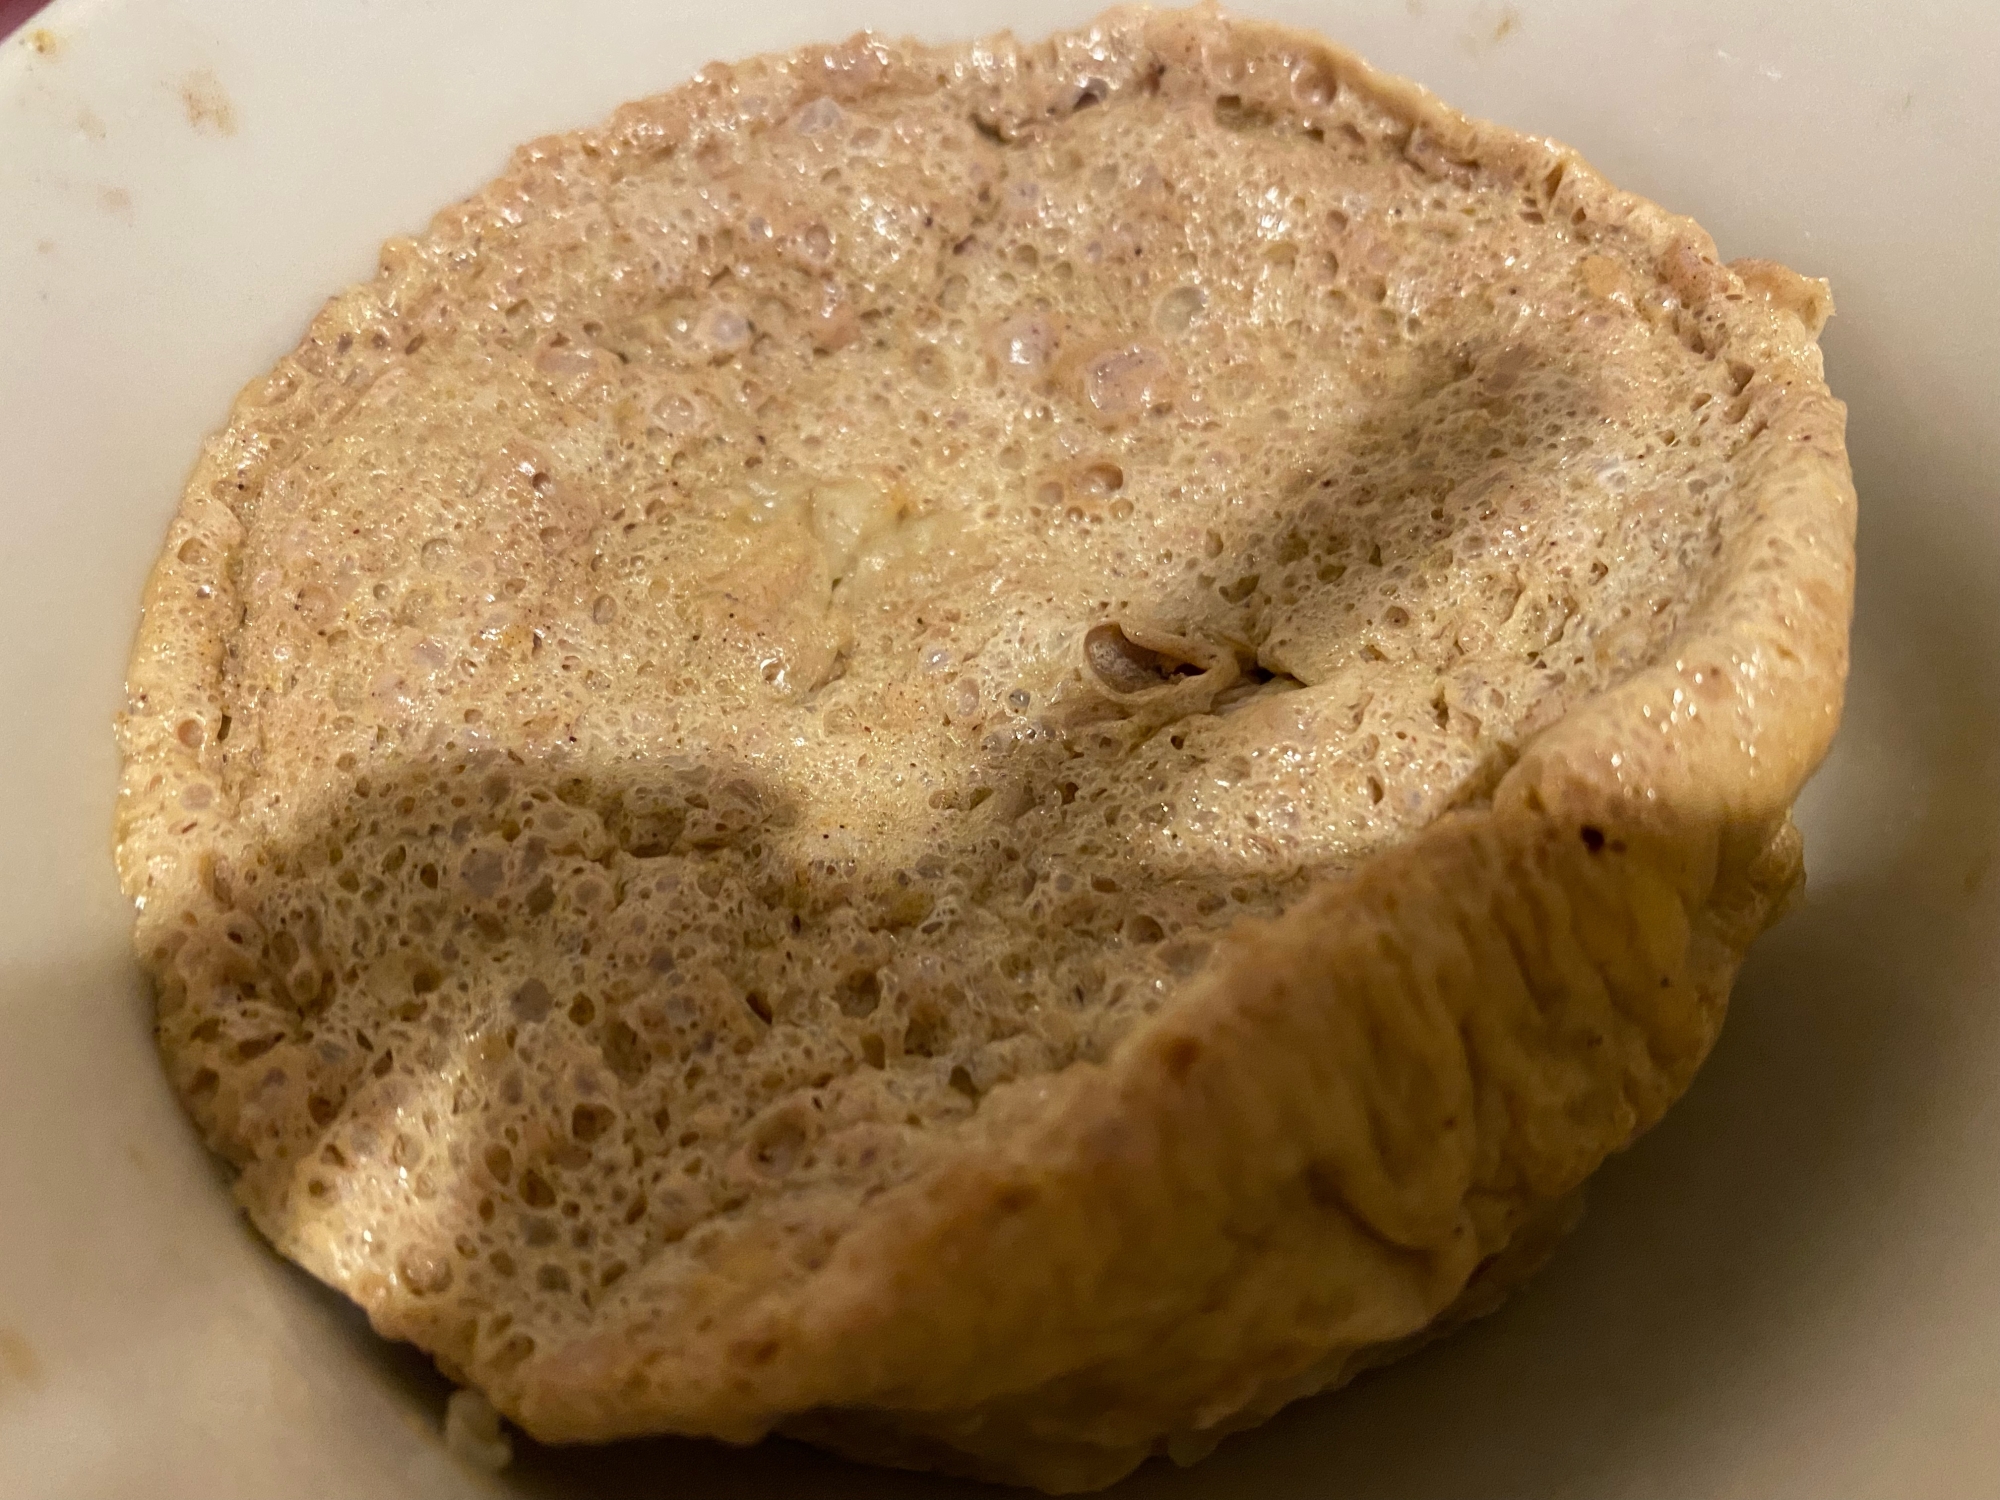 オートミールで作る簡単蒸しパン